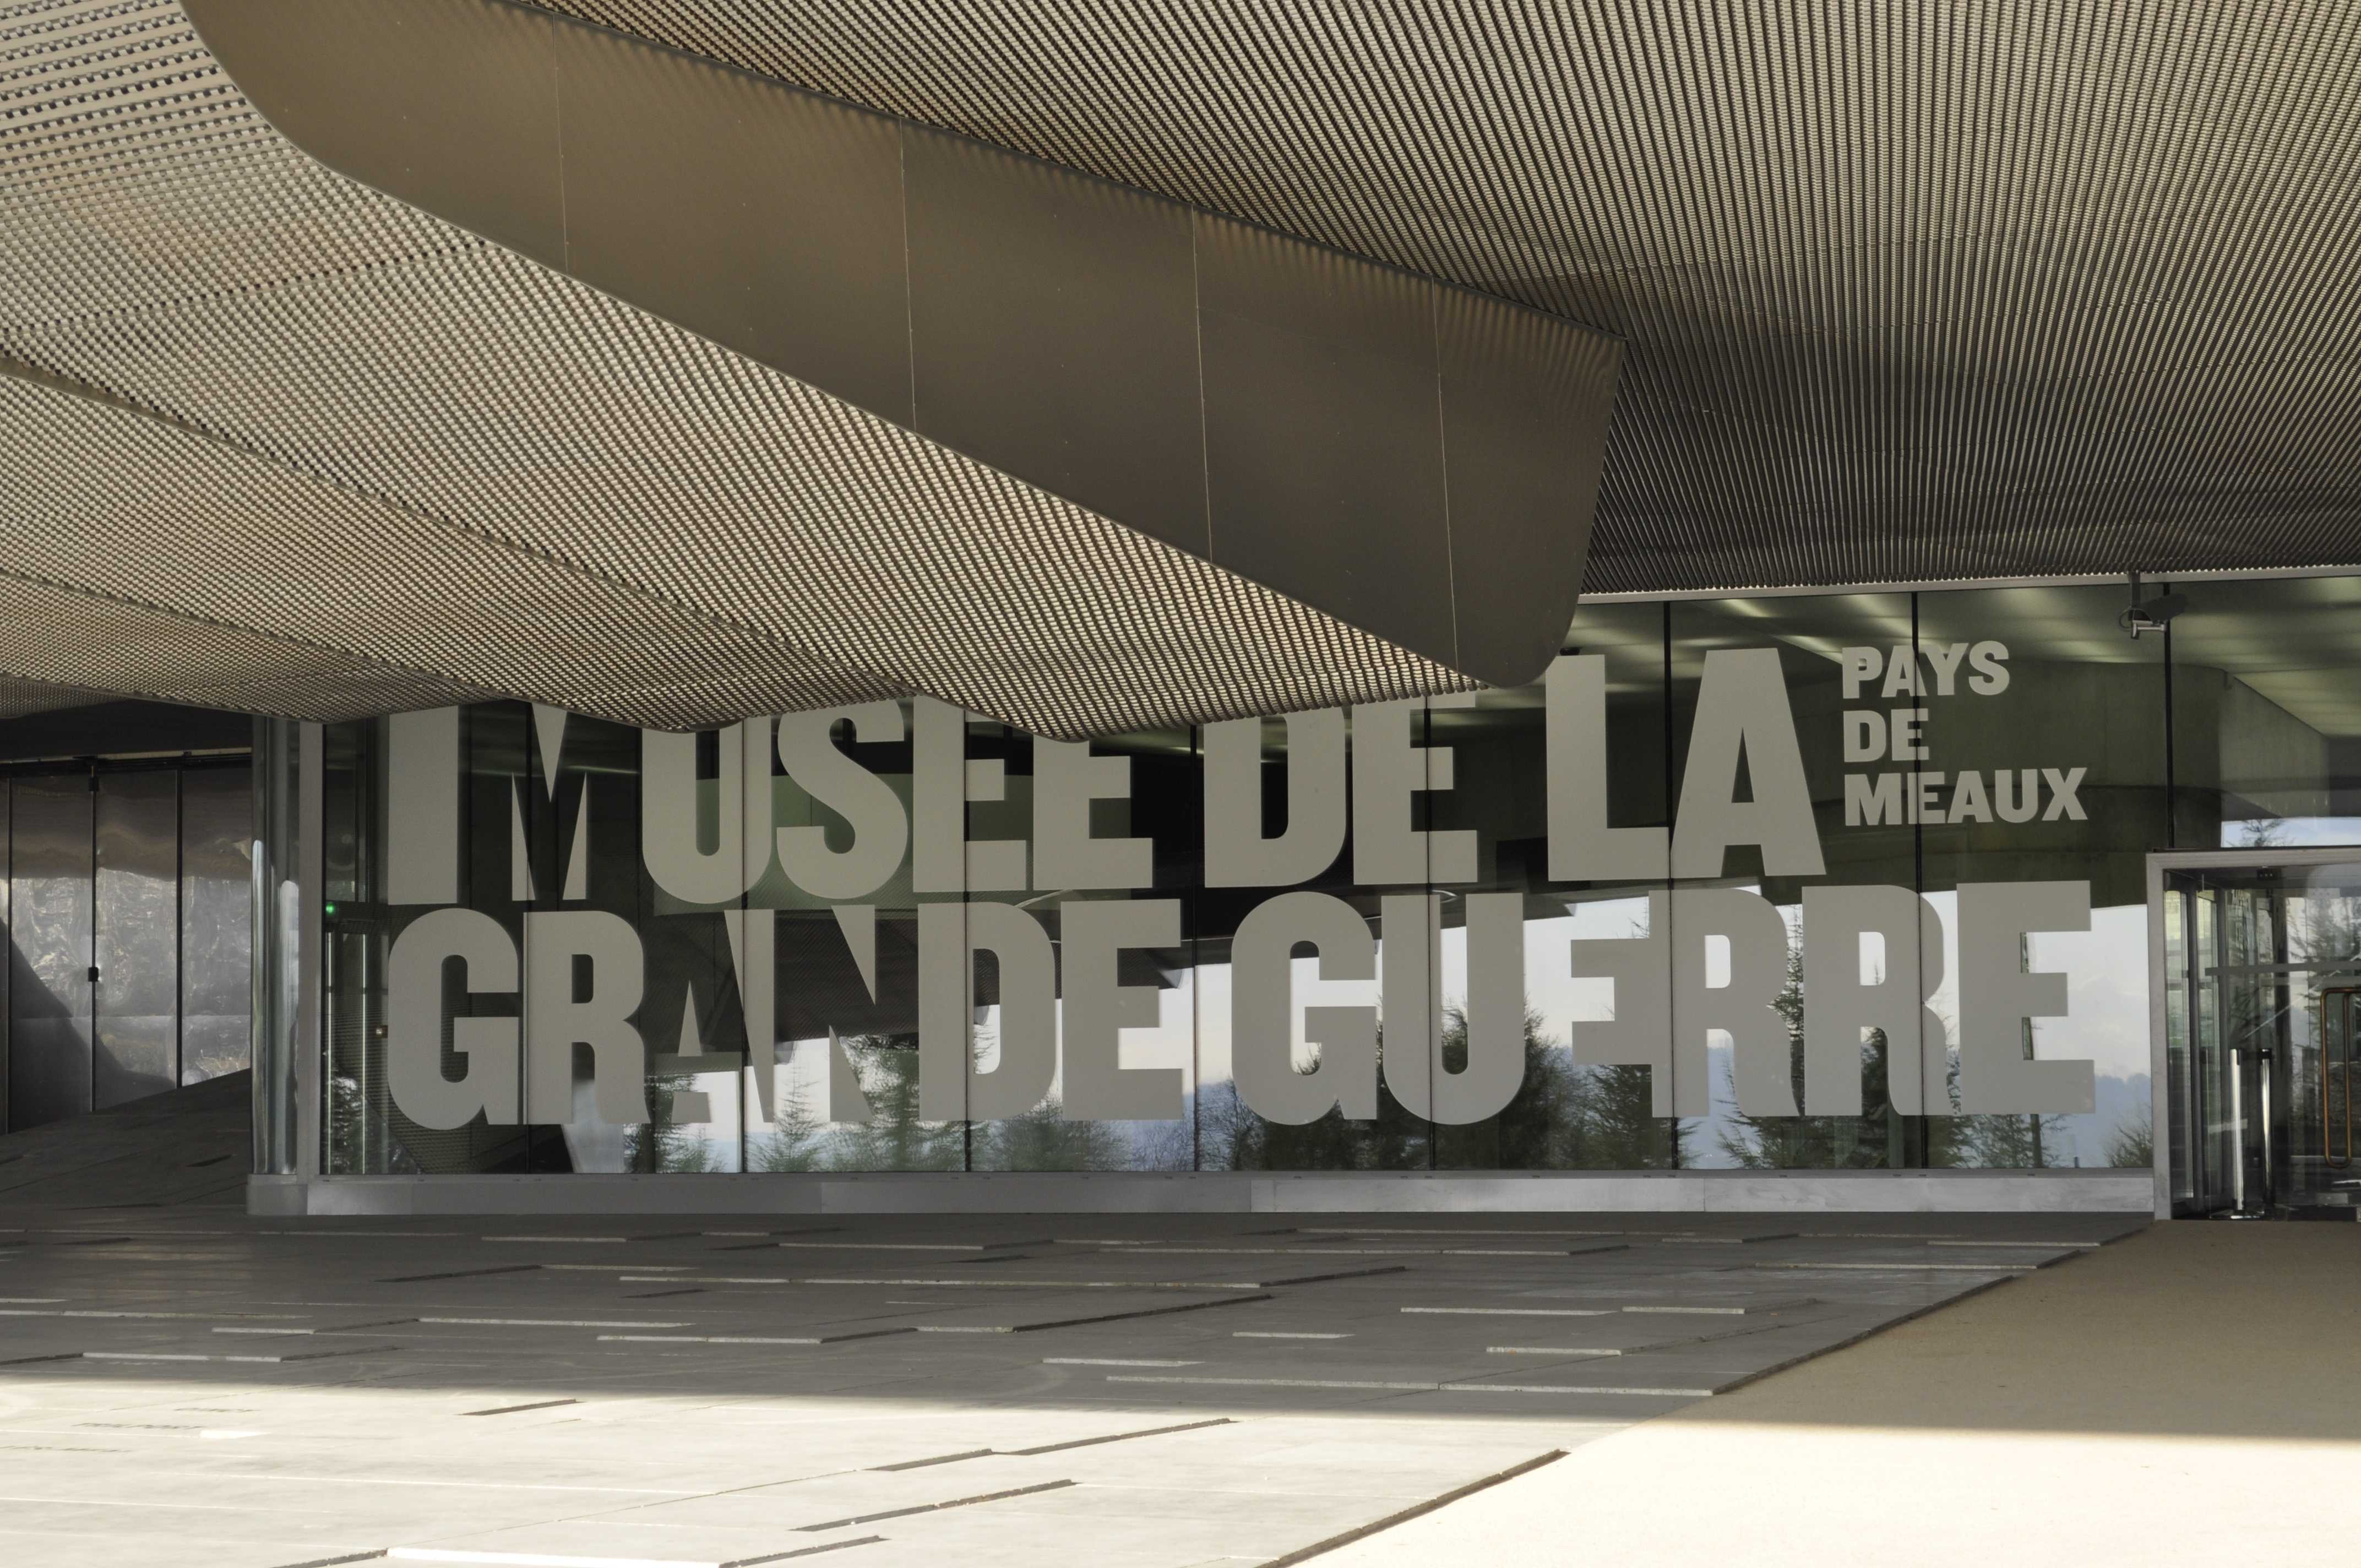 1399-musee_de_la_grande_guerre_de_meaux_seine-et-marne-ile-de-france.jpg